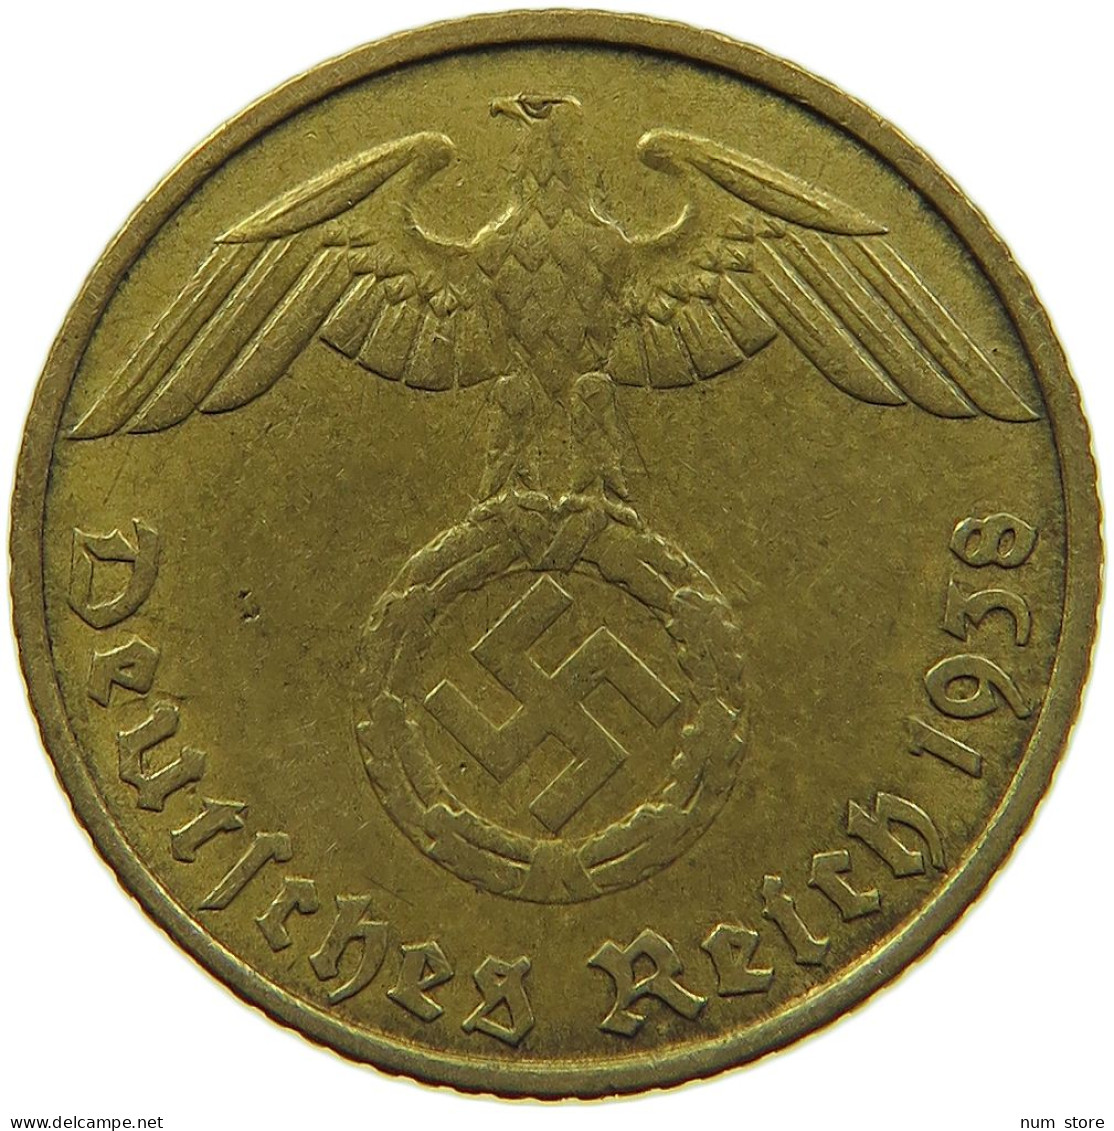 GERMANY 5 REICHSPFENNIG 1938 J #s091 0677 - 5 Reichspfennig